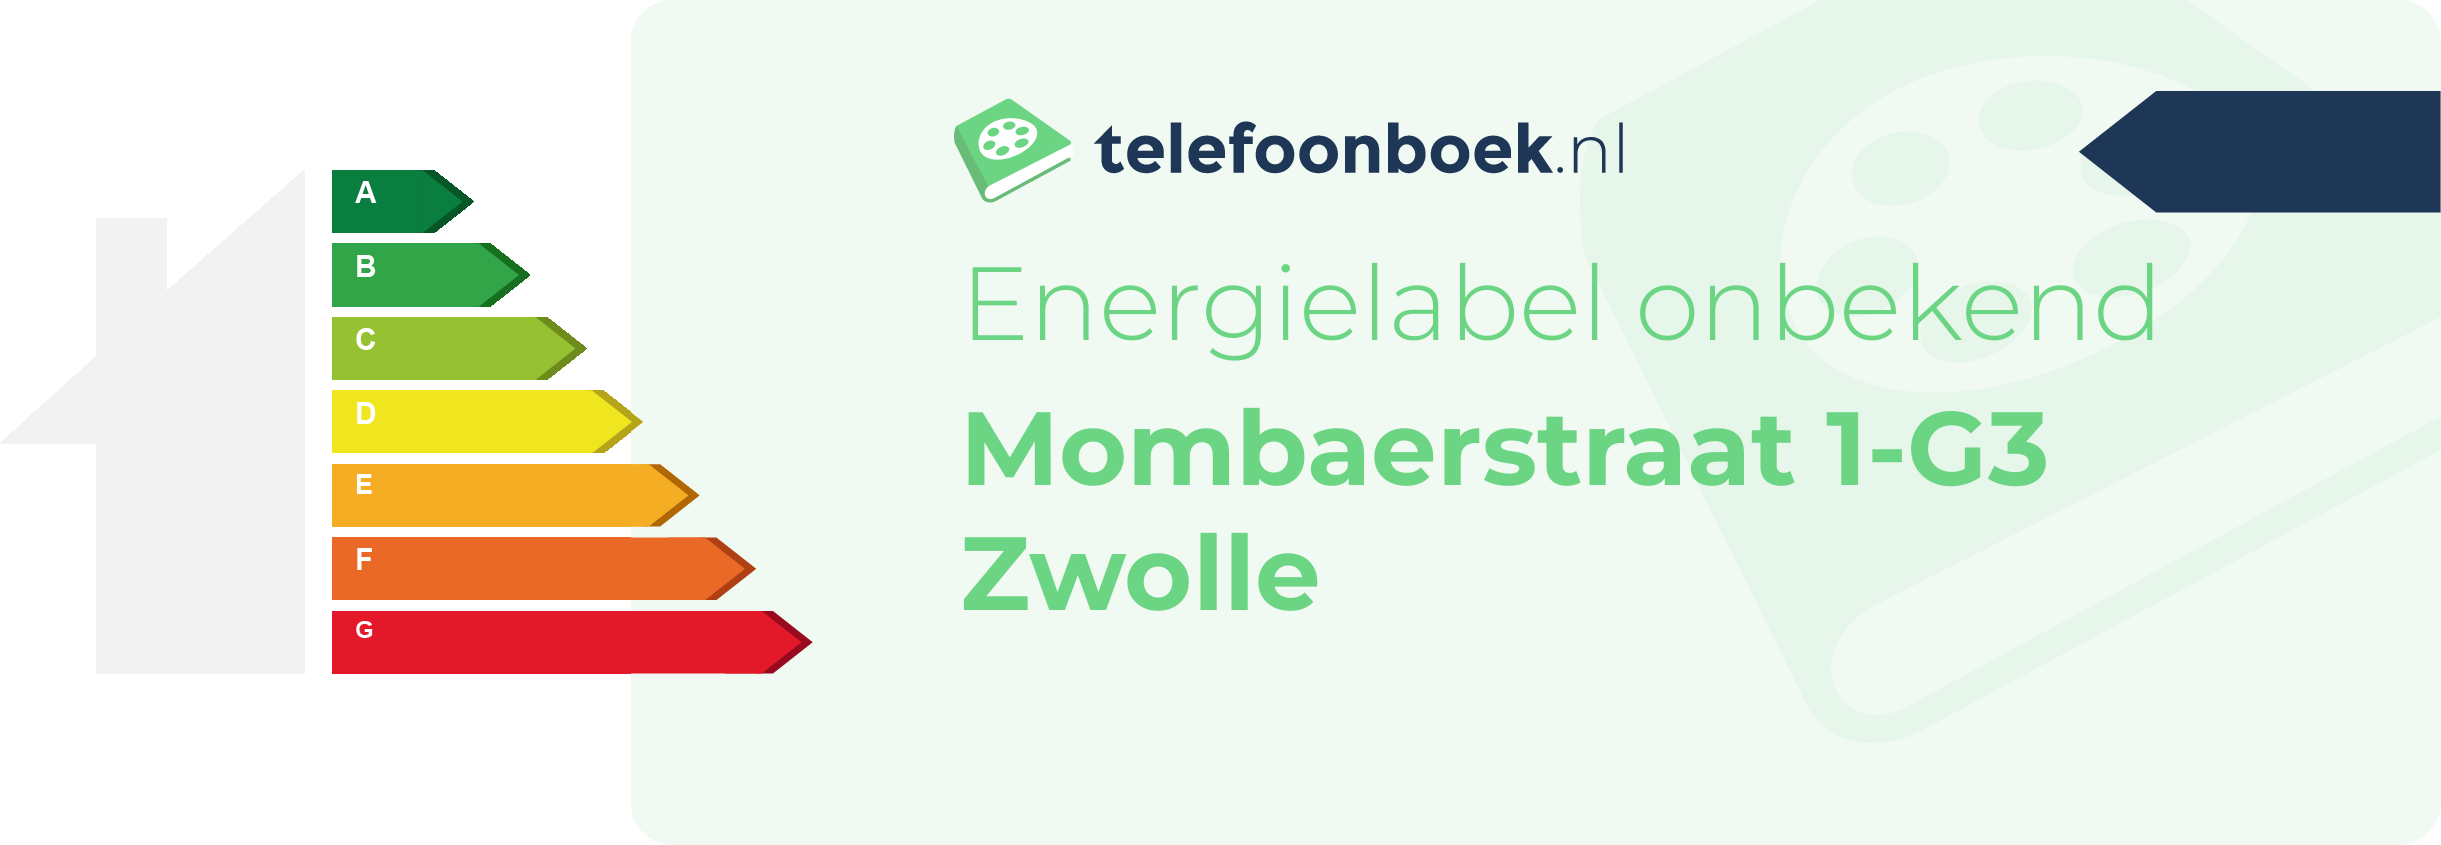 Energielabel Mombaerstraat 1-G3 Zwolle